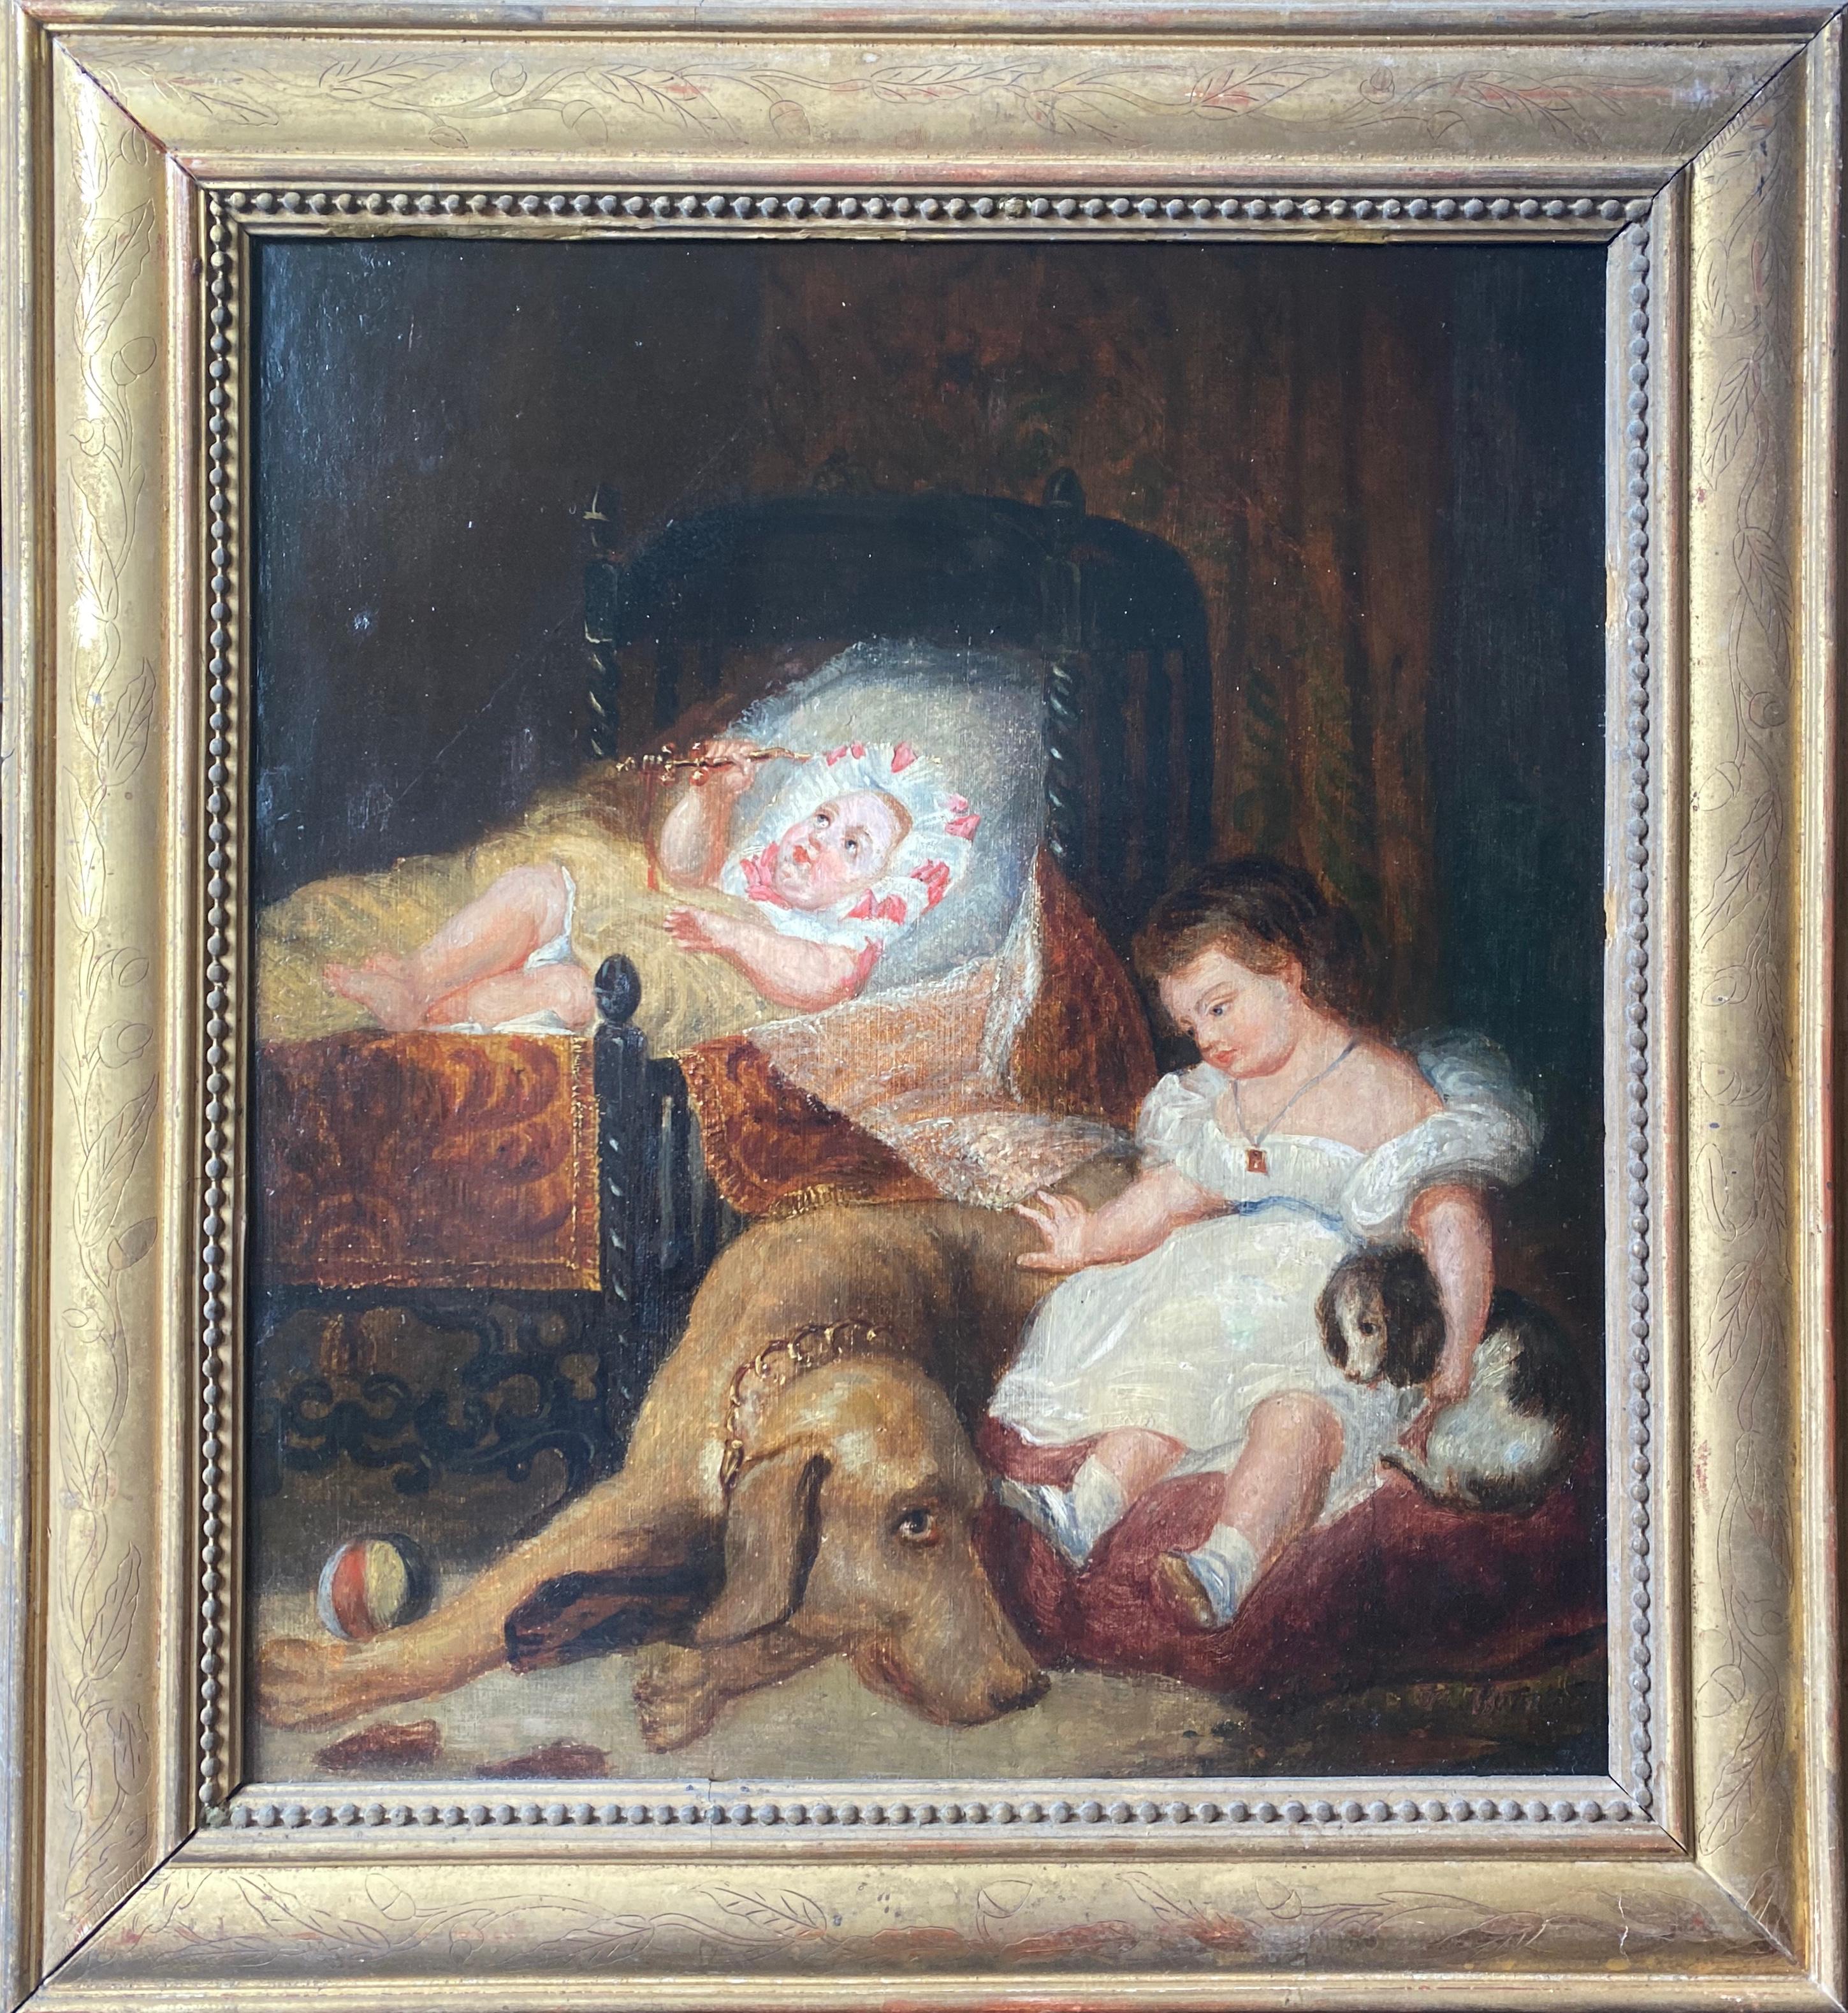 Familienszene, Kinder, Hund und Welpe, französisches Gemälde von Delacroix' begabtem Freund